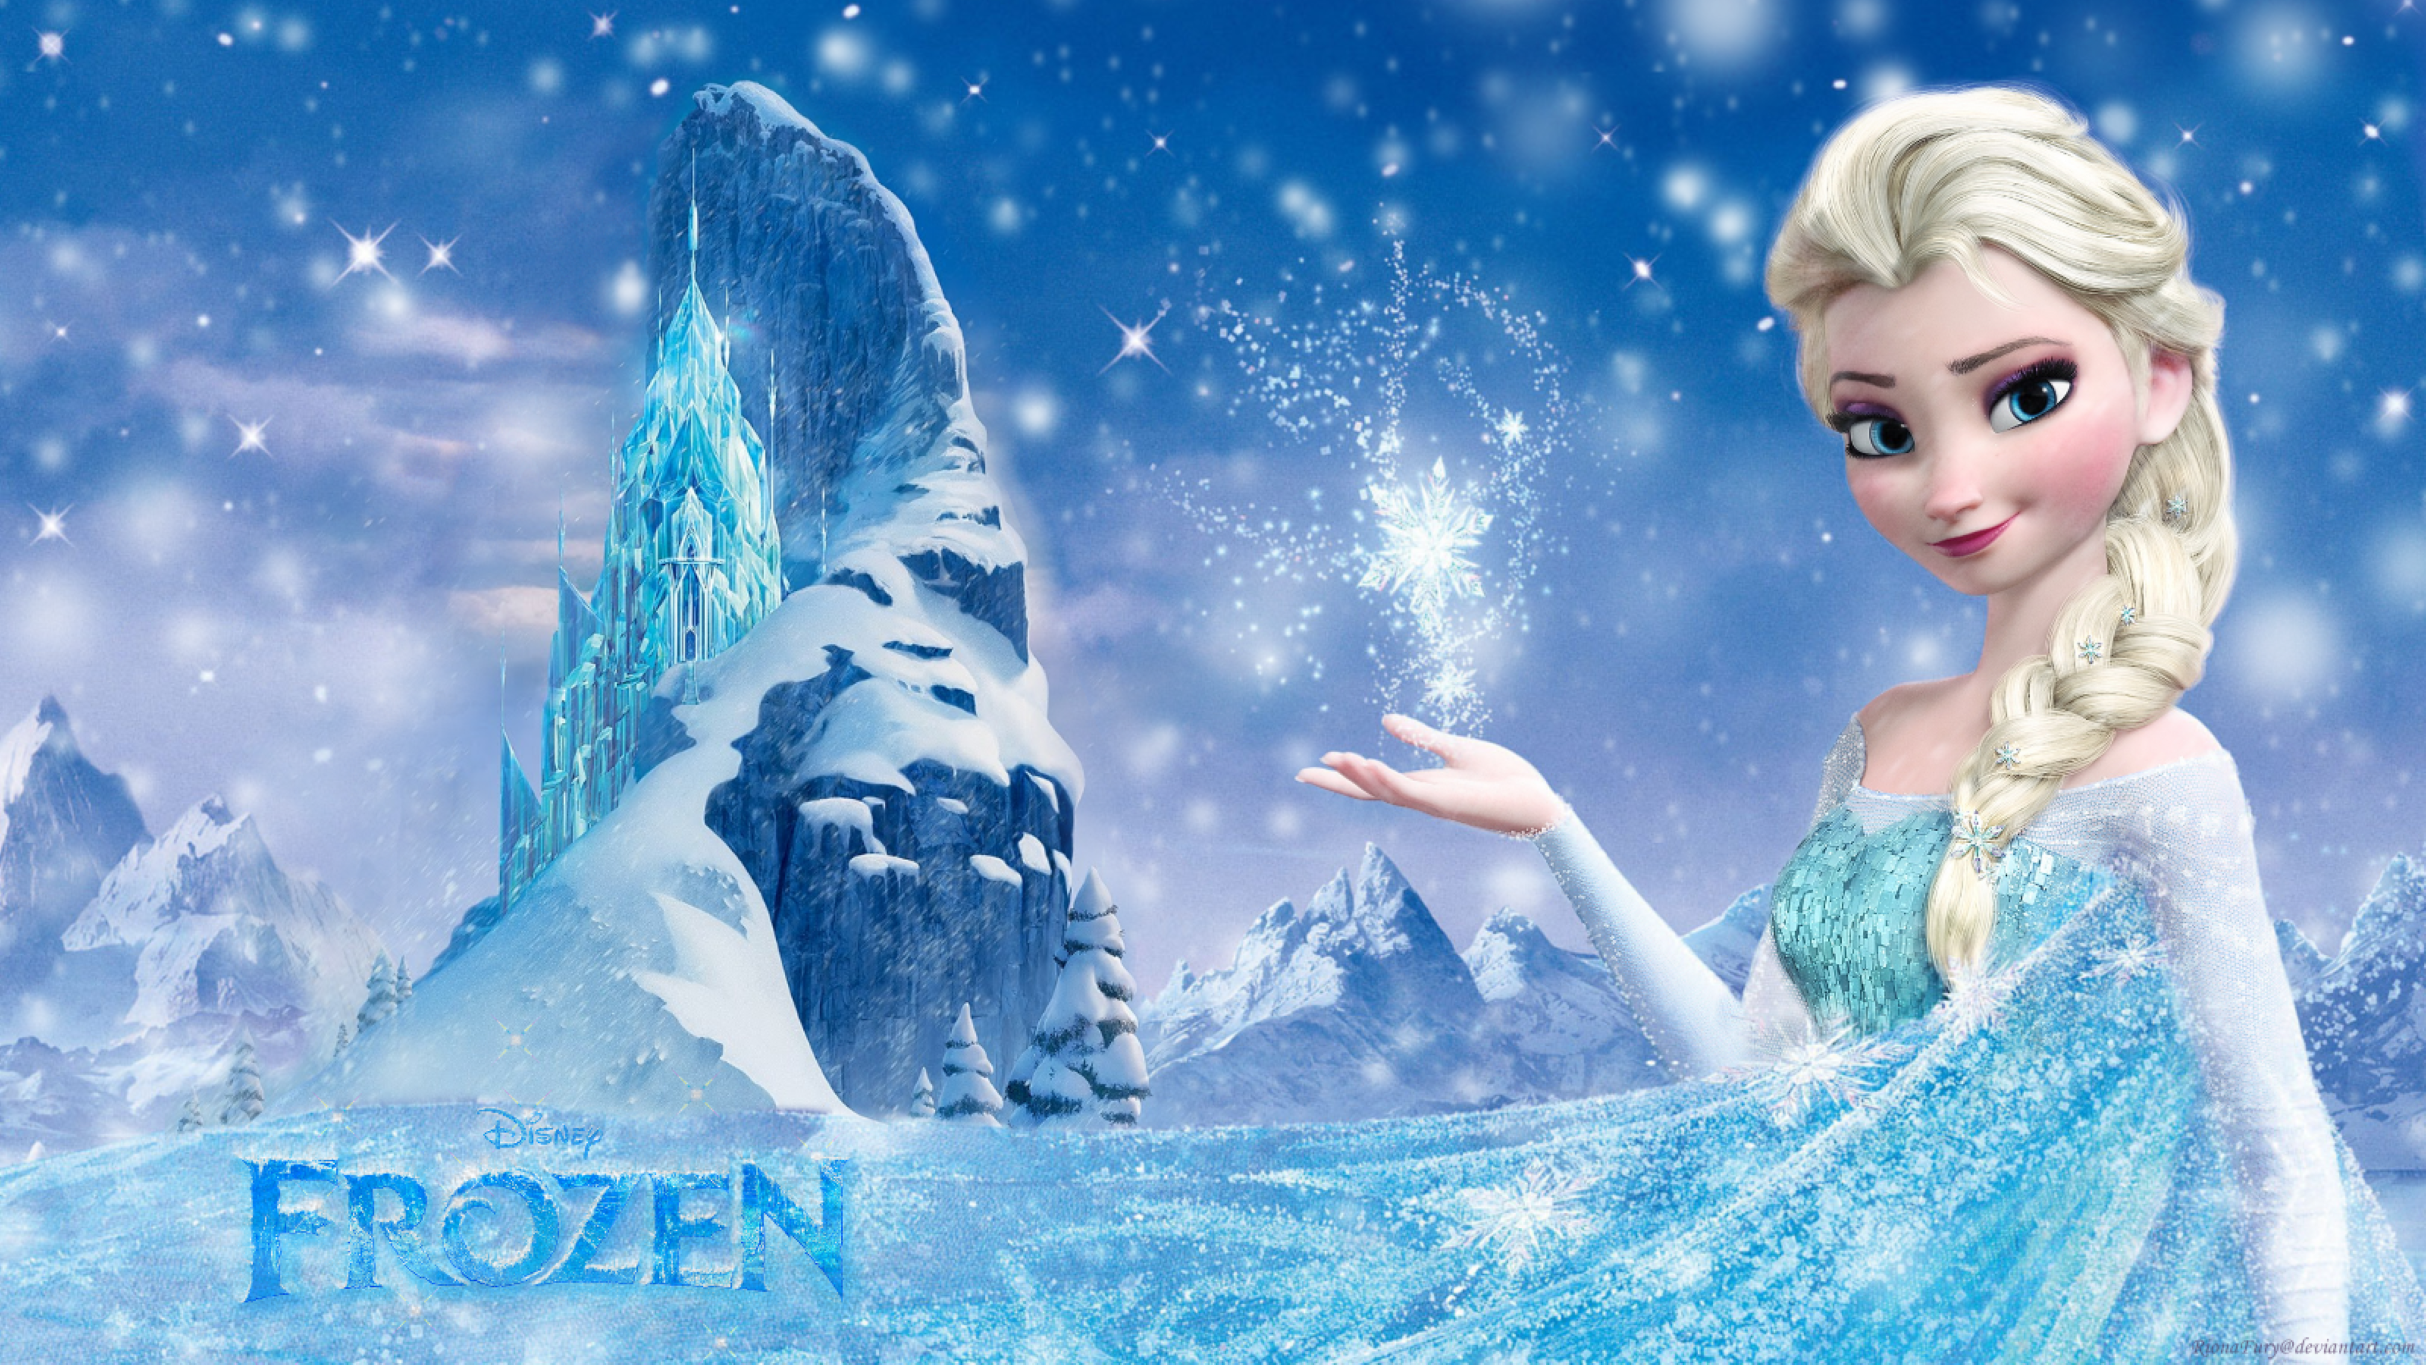 Frozen: Live In Concert pre-sale password